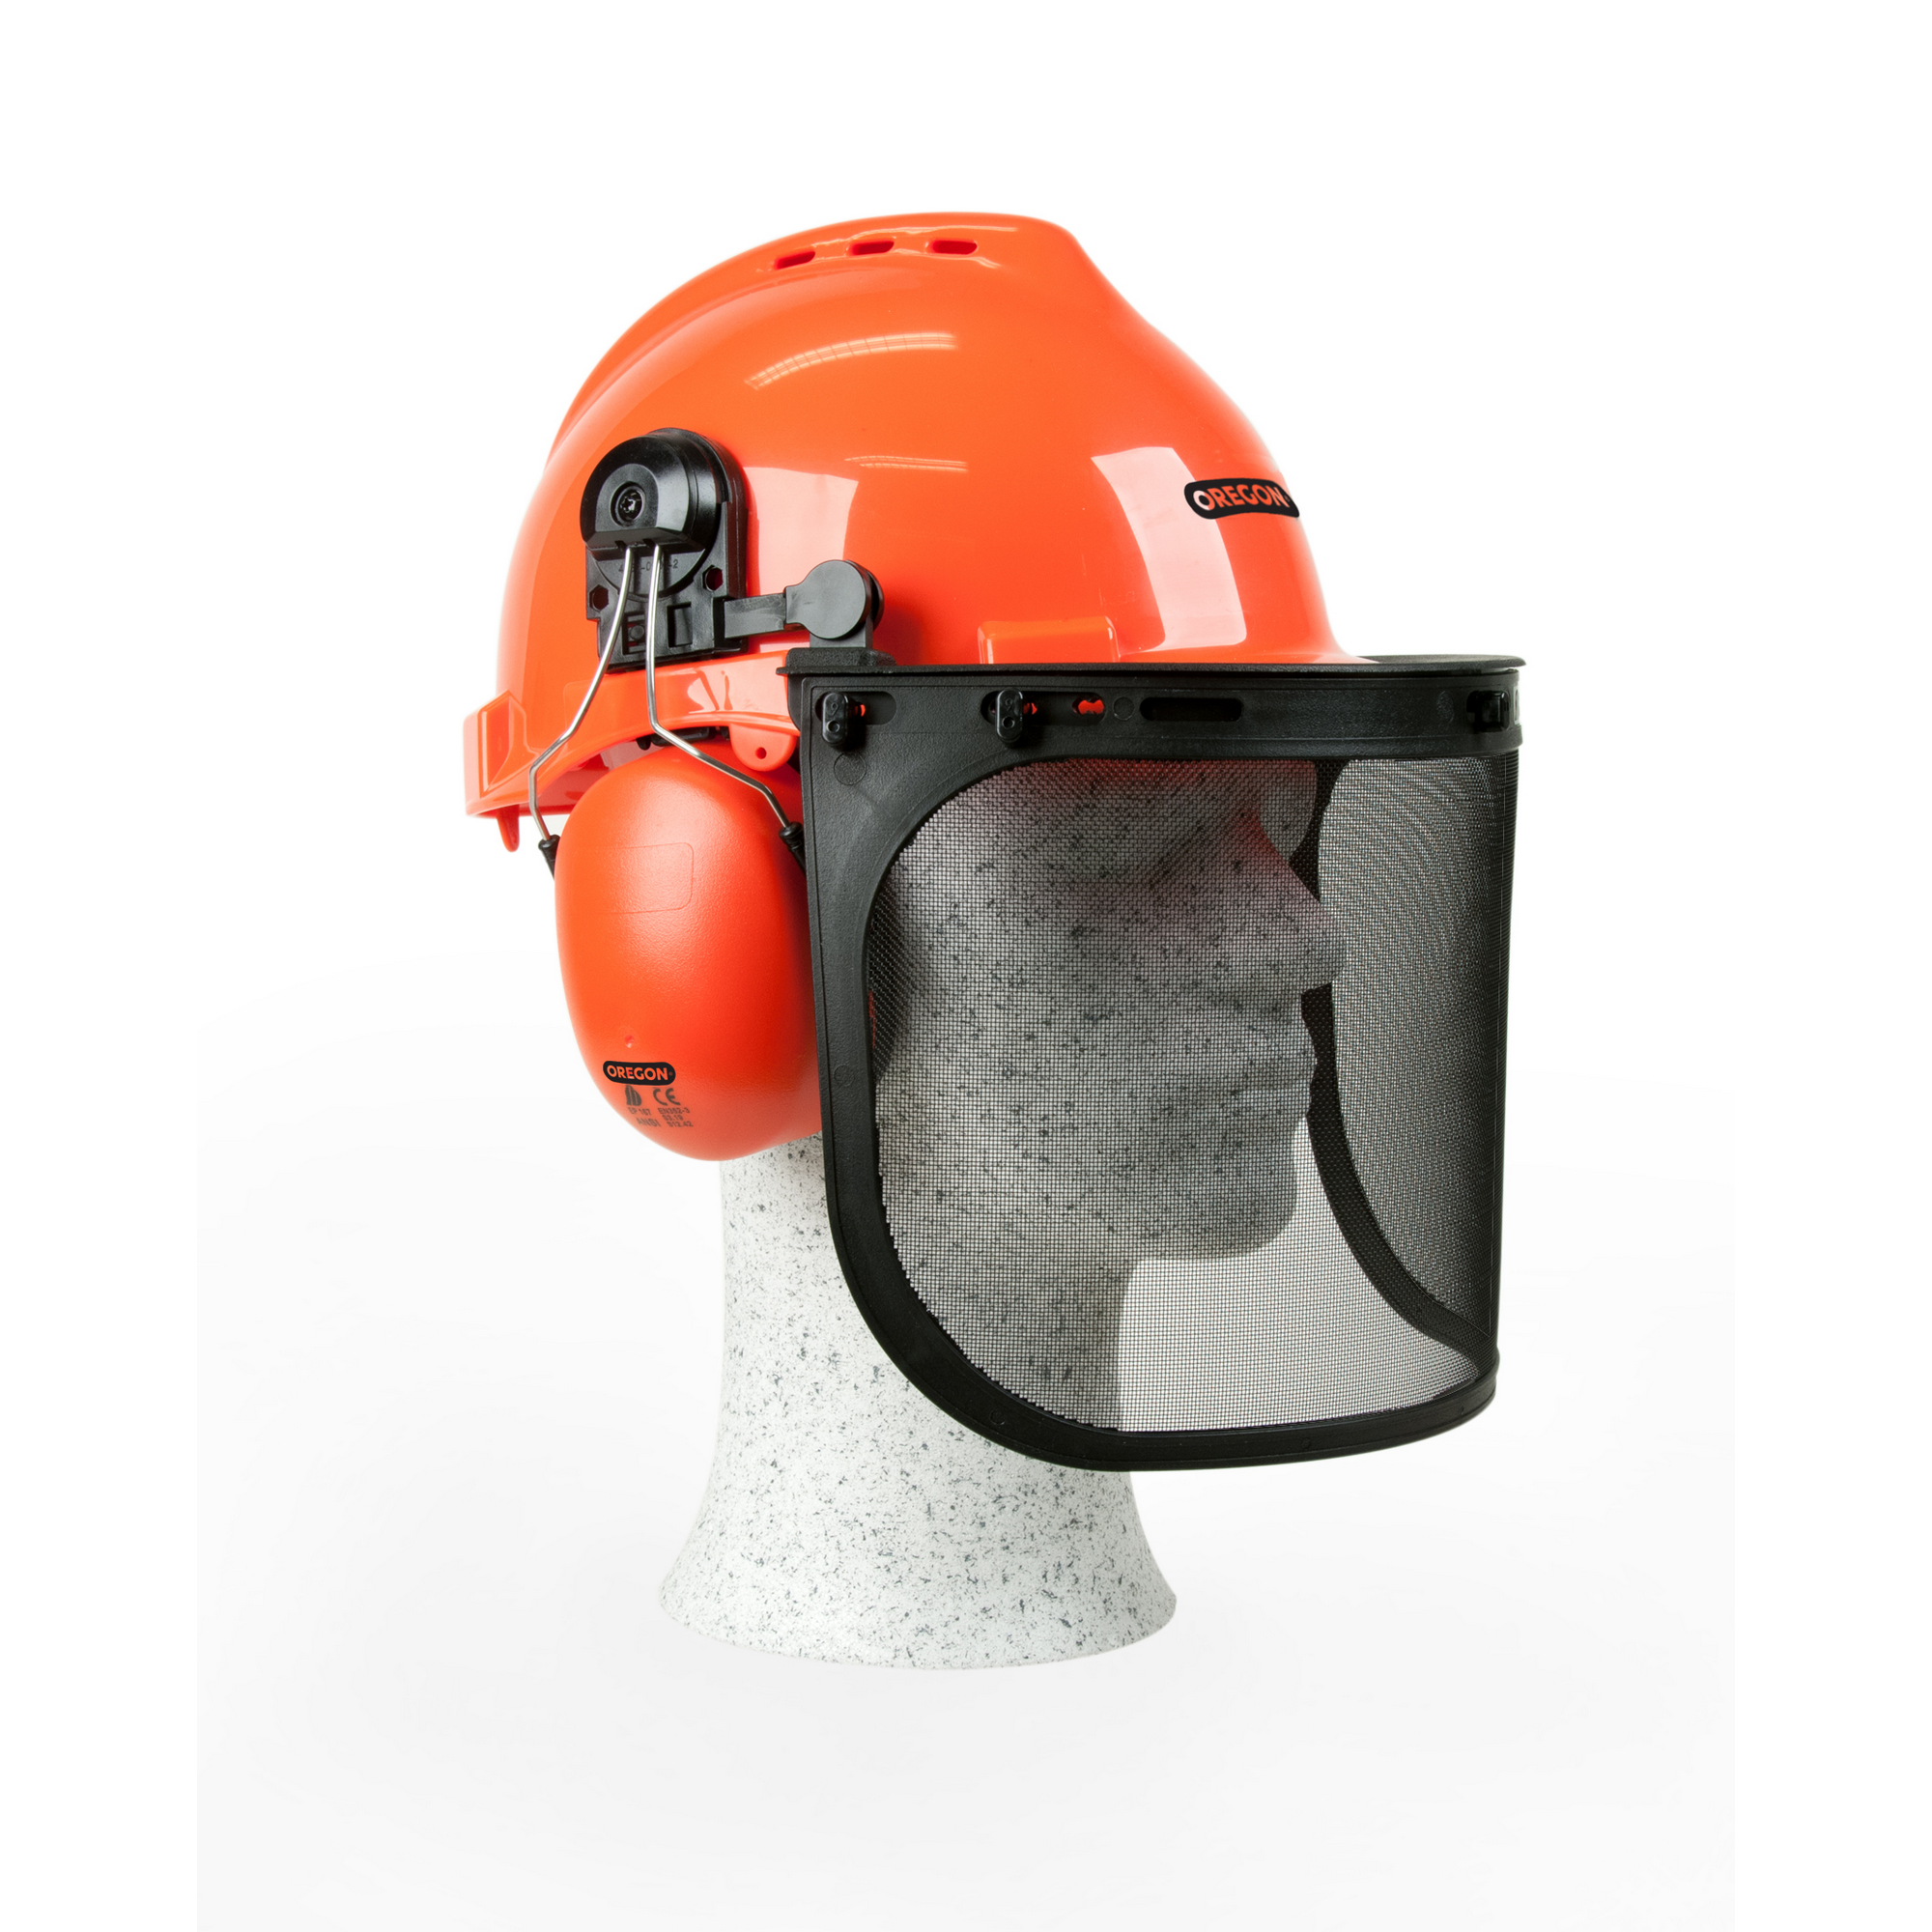 Schutzhelmkombination mit Gehör- und Gesichtsschutz, 52-62 cm, orange + product picture